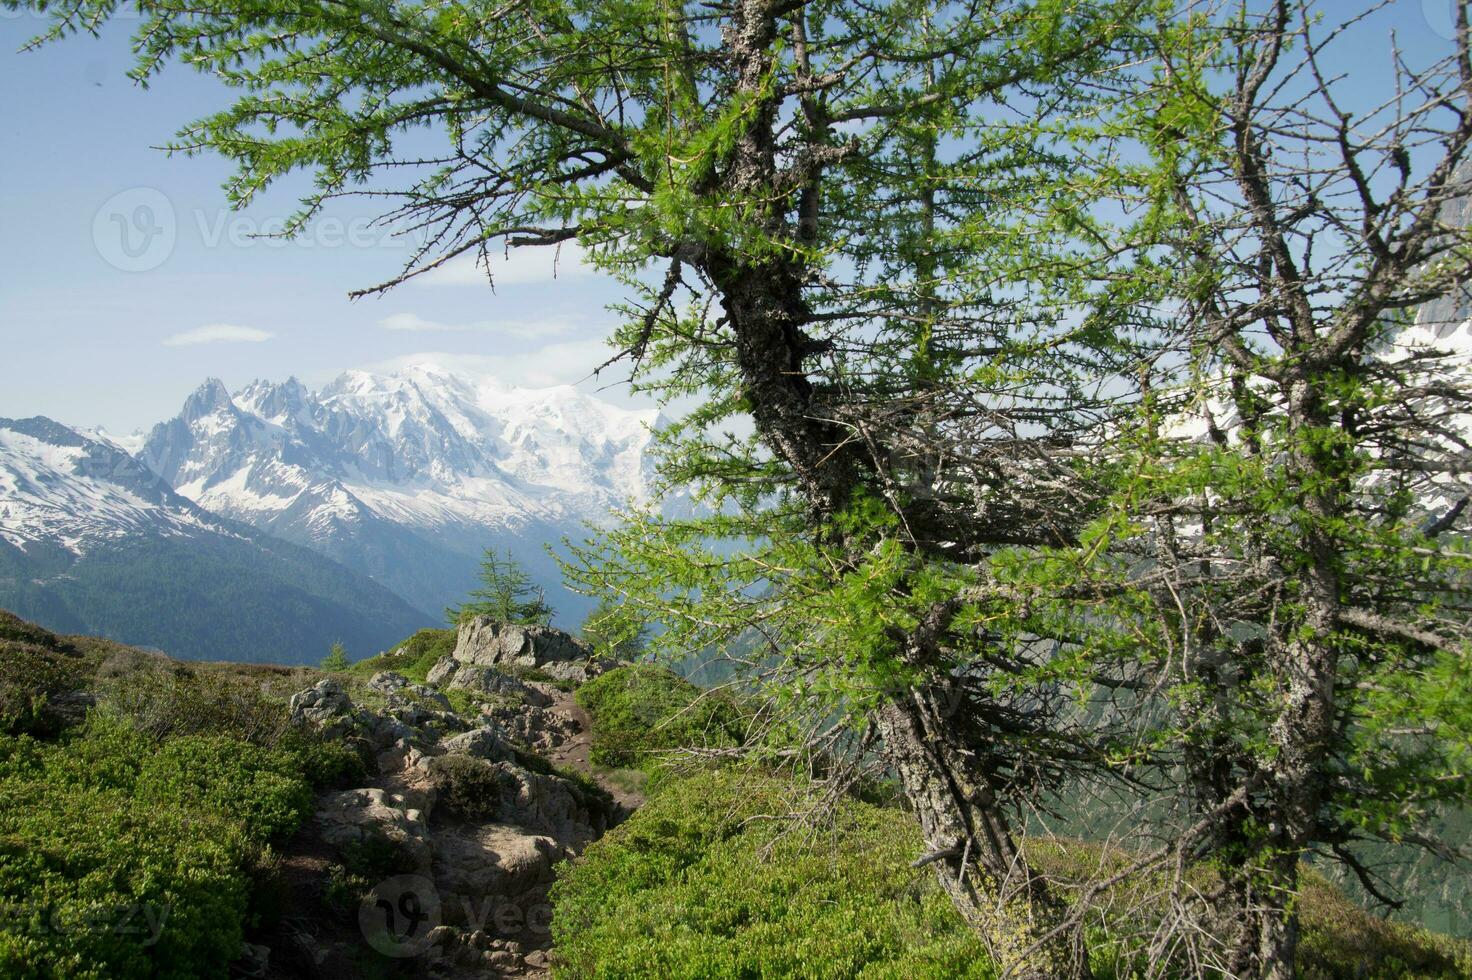 paisaje de el francés Alpes foto